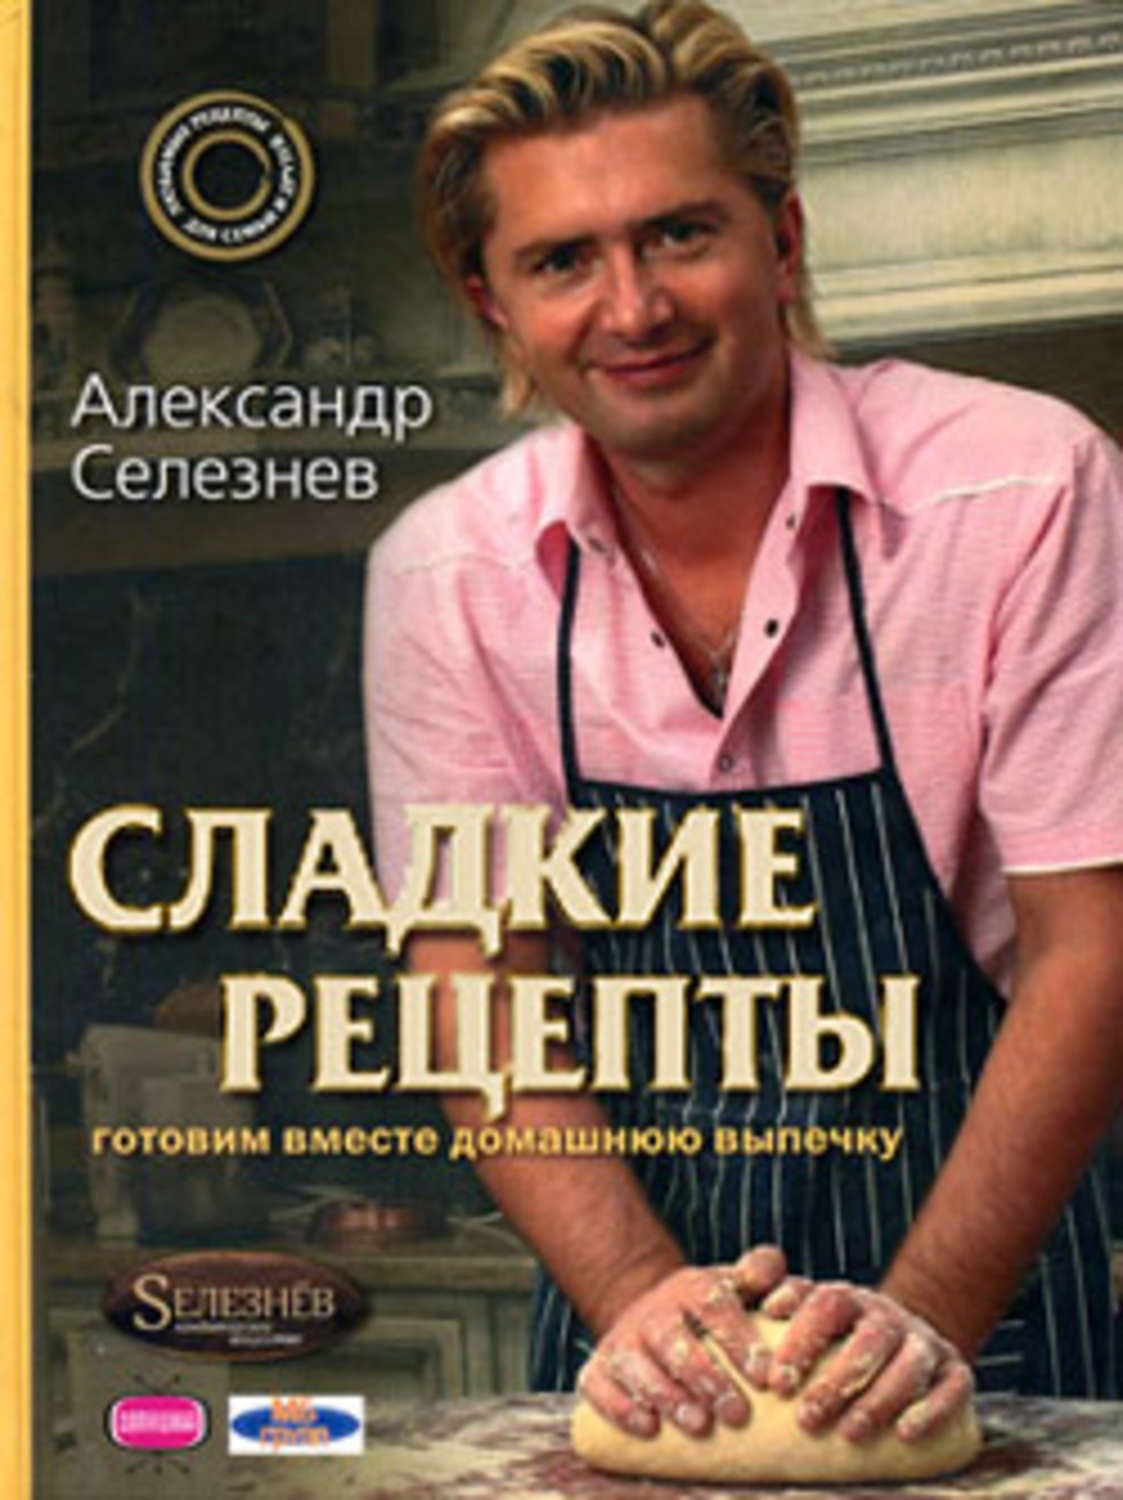 Книга Александр Селезнев